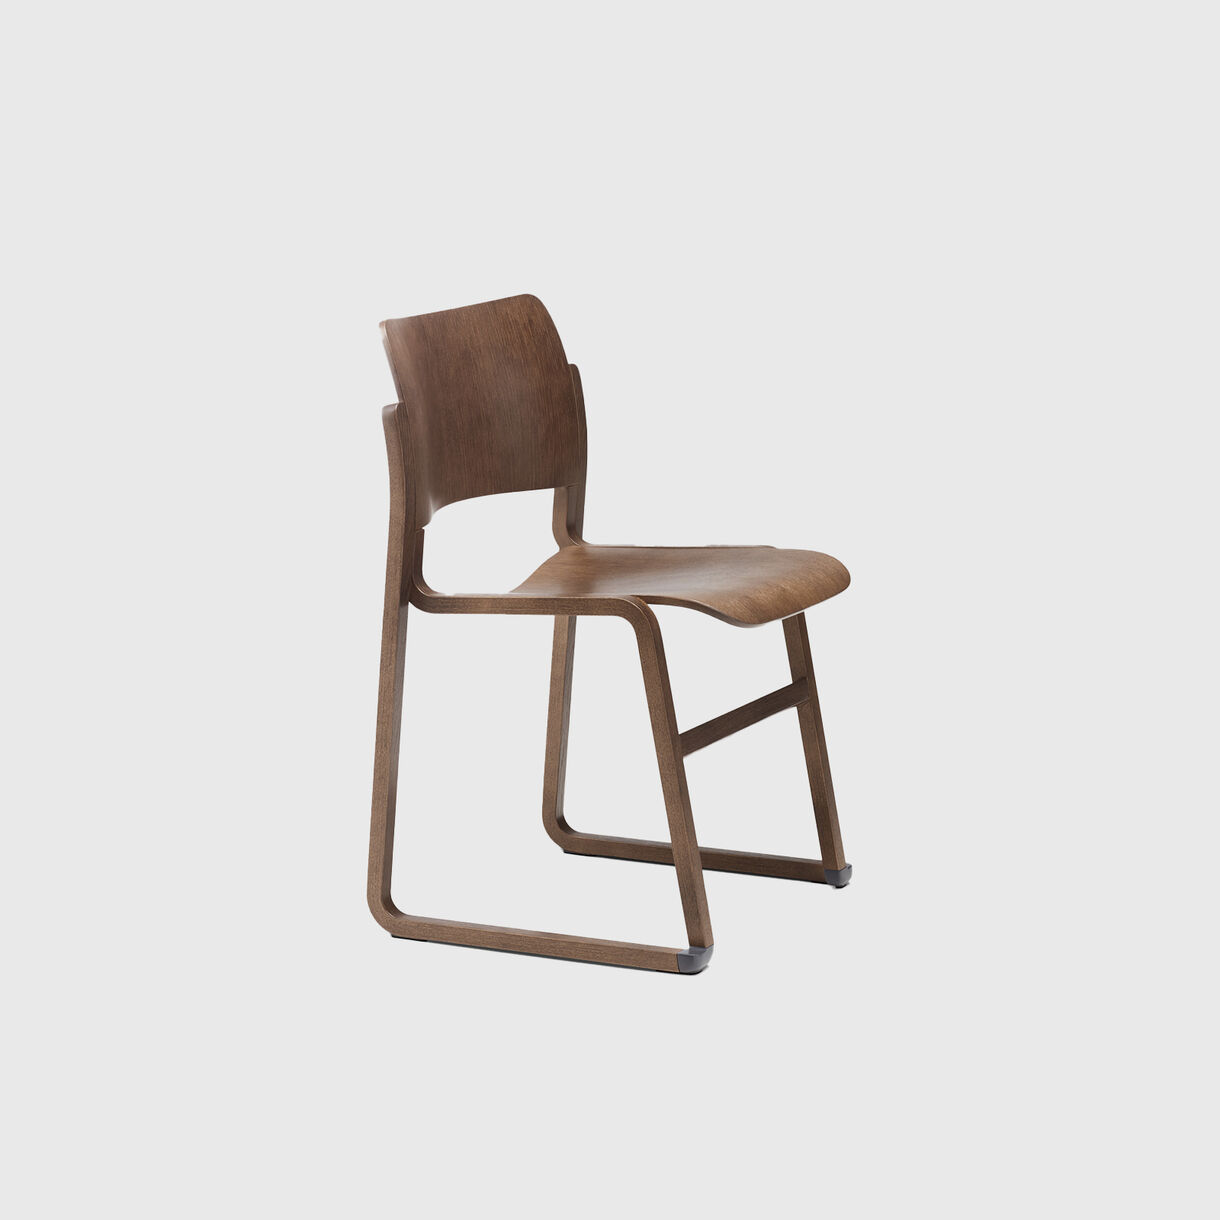 40/4 Wood Frame Chair, Walnut